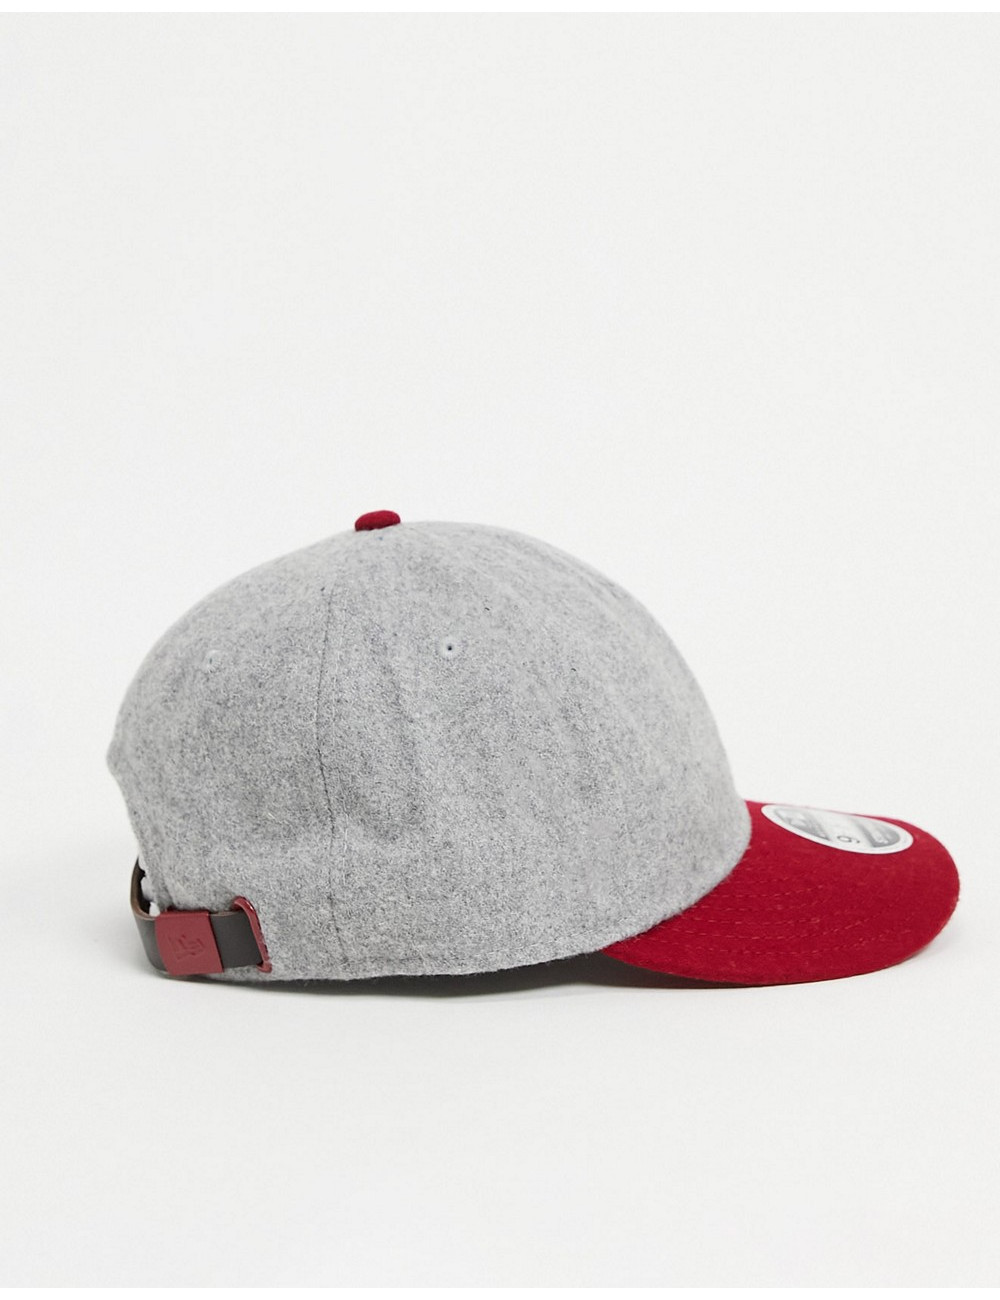 New Era 9fifty cap in grey